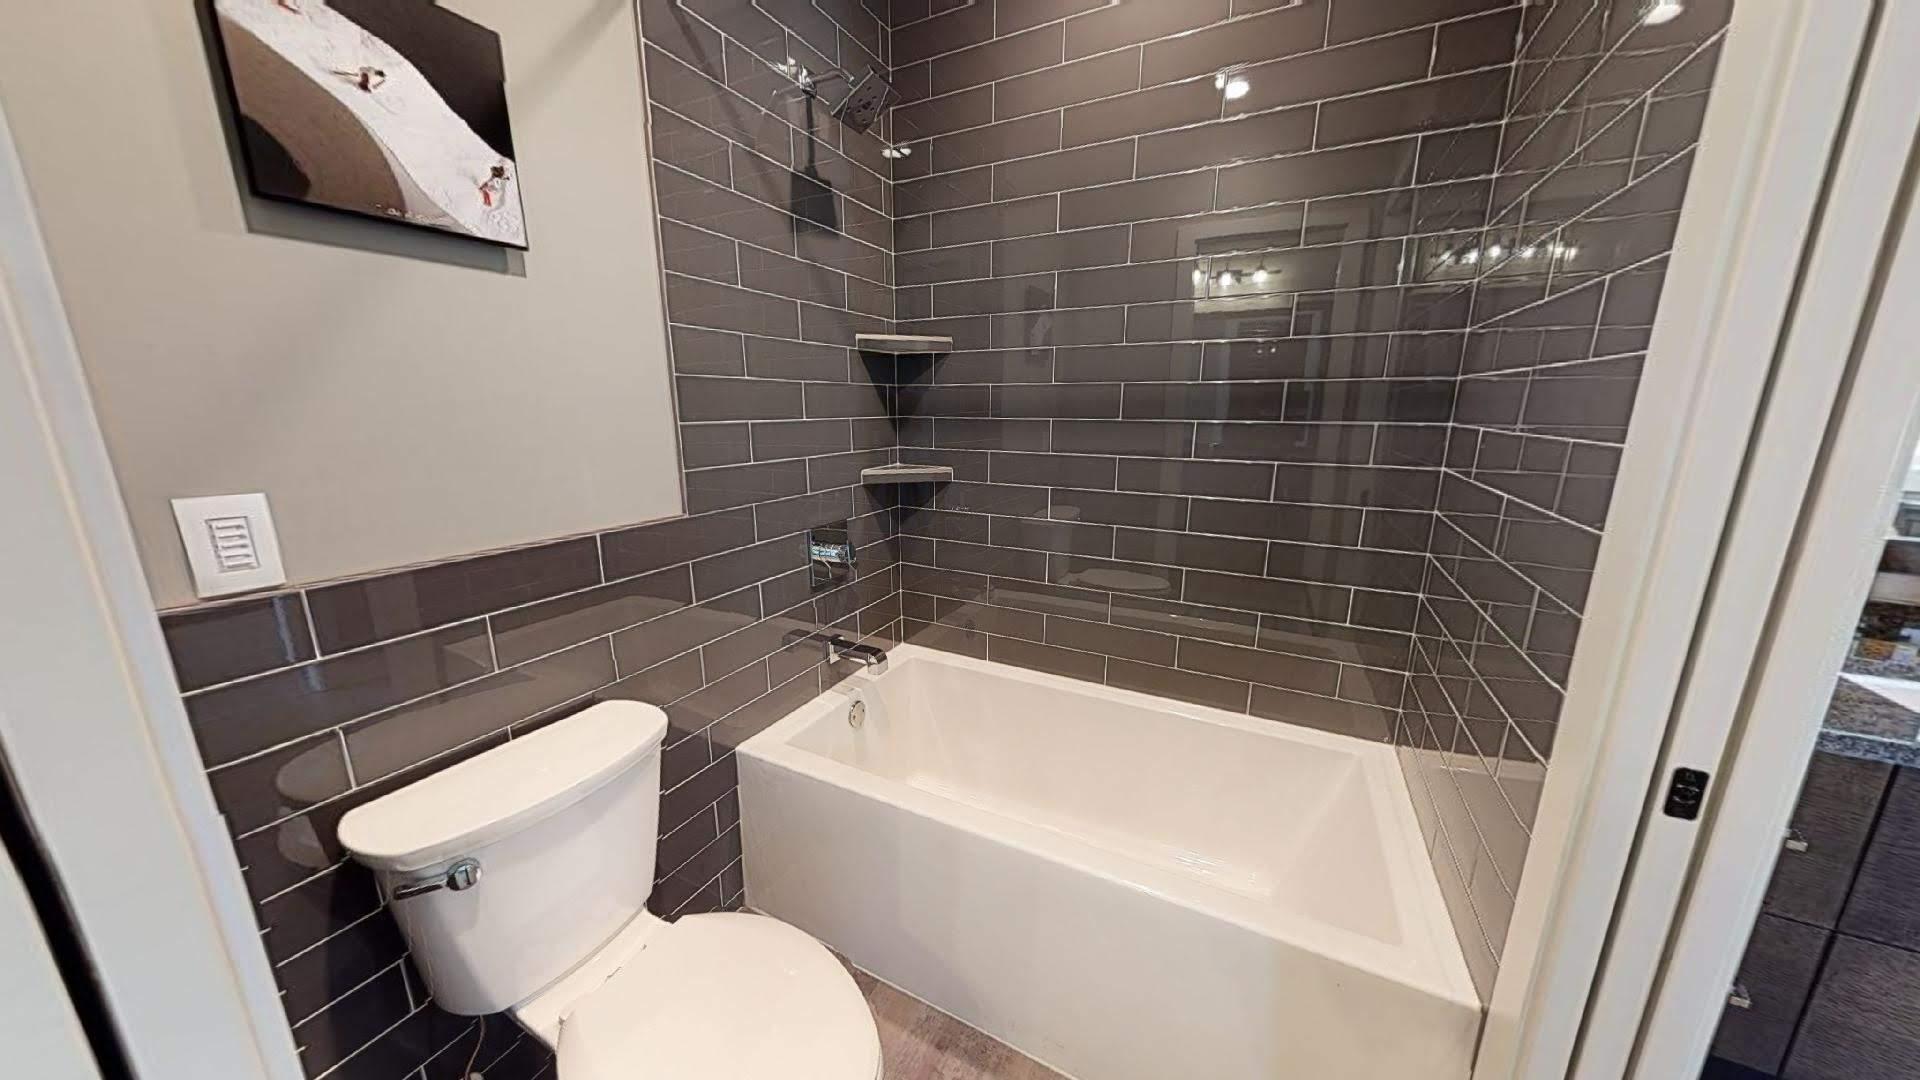 Jack & Jill Bathroom With Separate Vanities